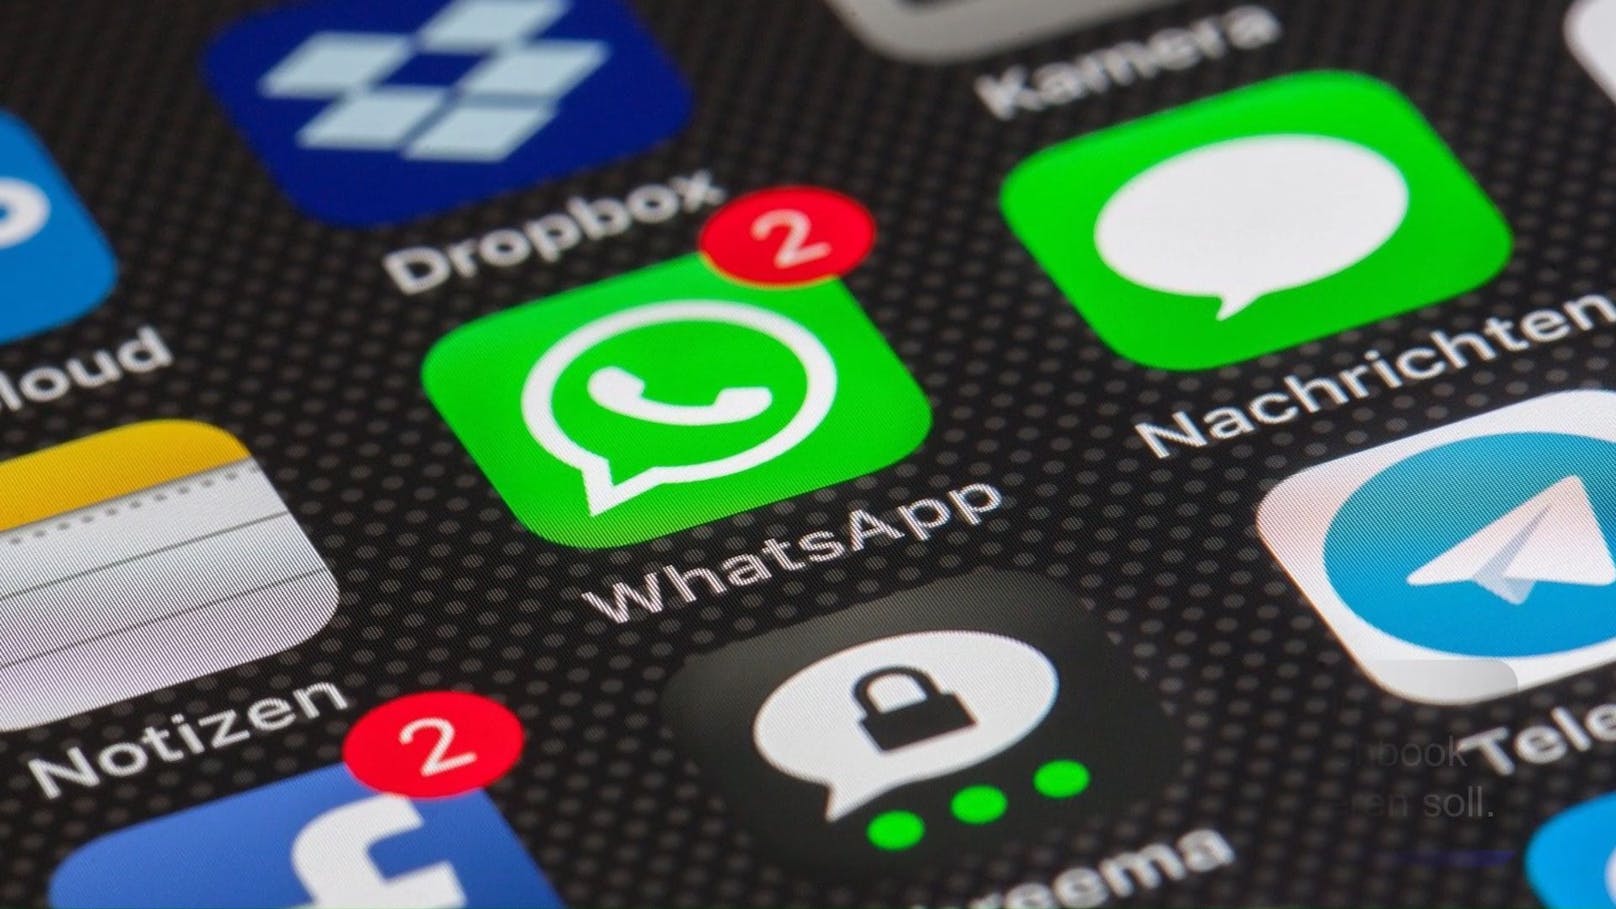 Dringend – das musst du bei WhatsApp jetzt ändern